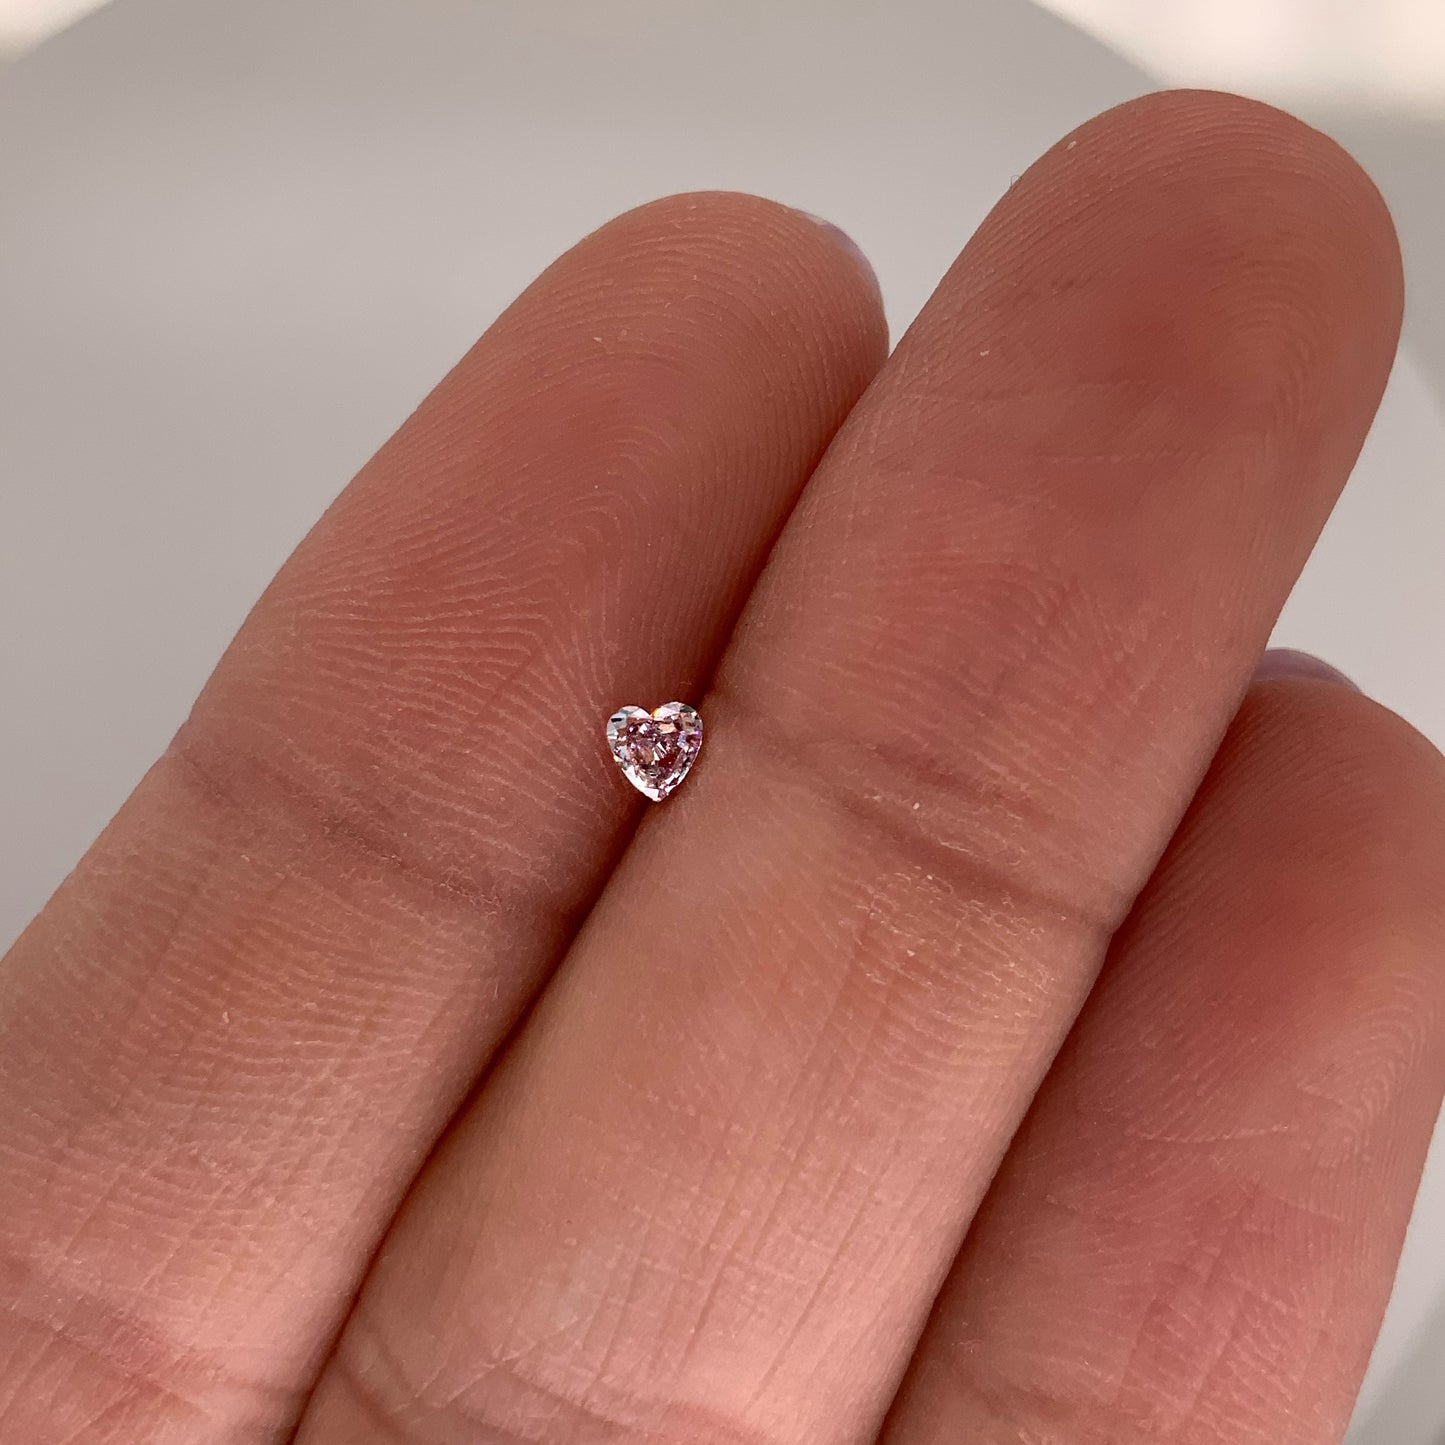 ANTICIPO / APARTADO Diamante Rosa Morado “L” / Corte Corazón / Medidas: 3.02 x 3.12mm, valor total 20,730 pesos